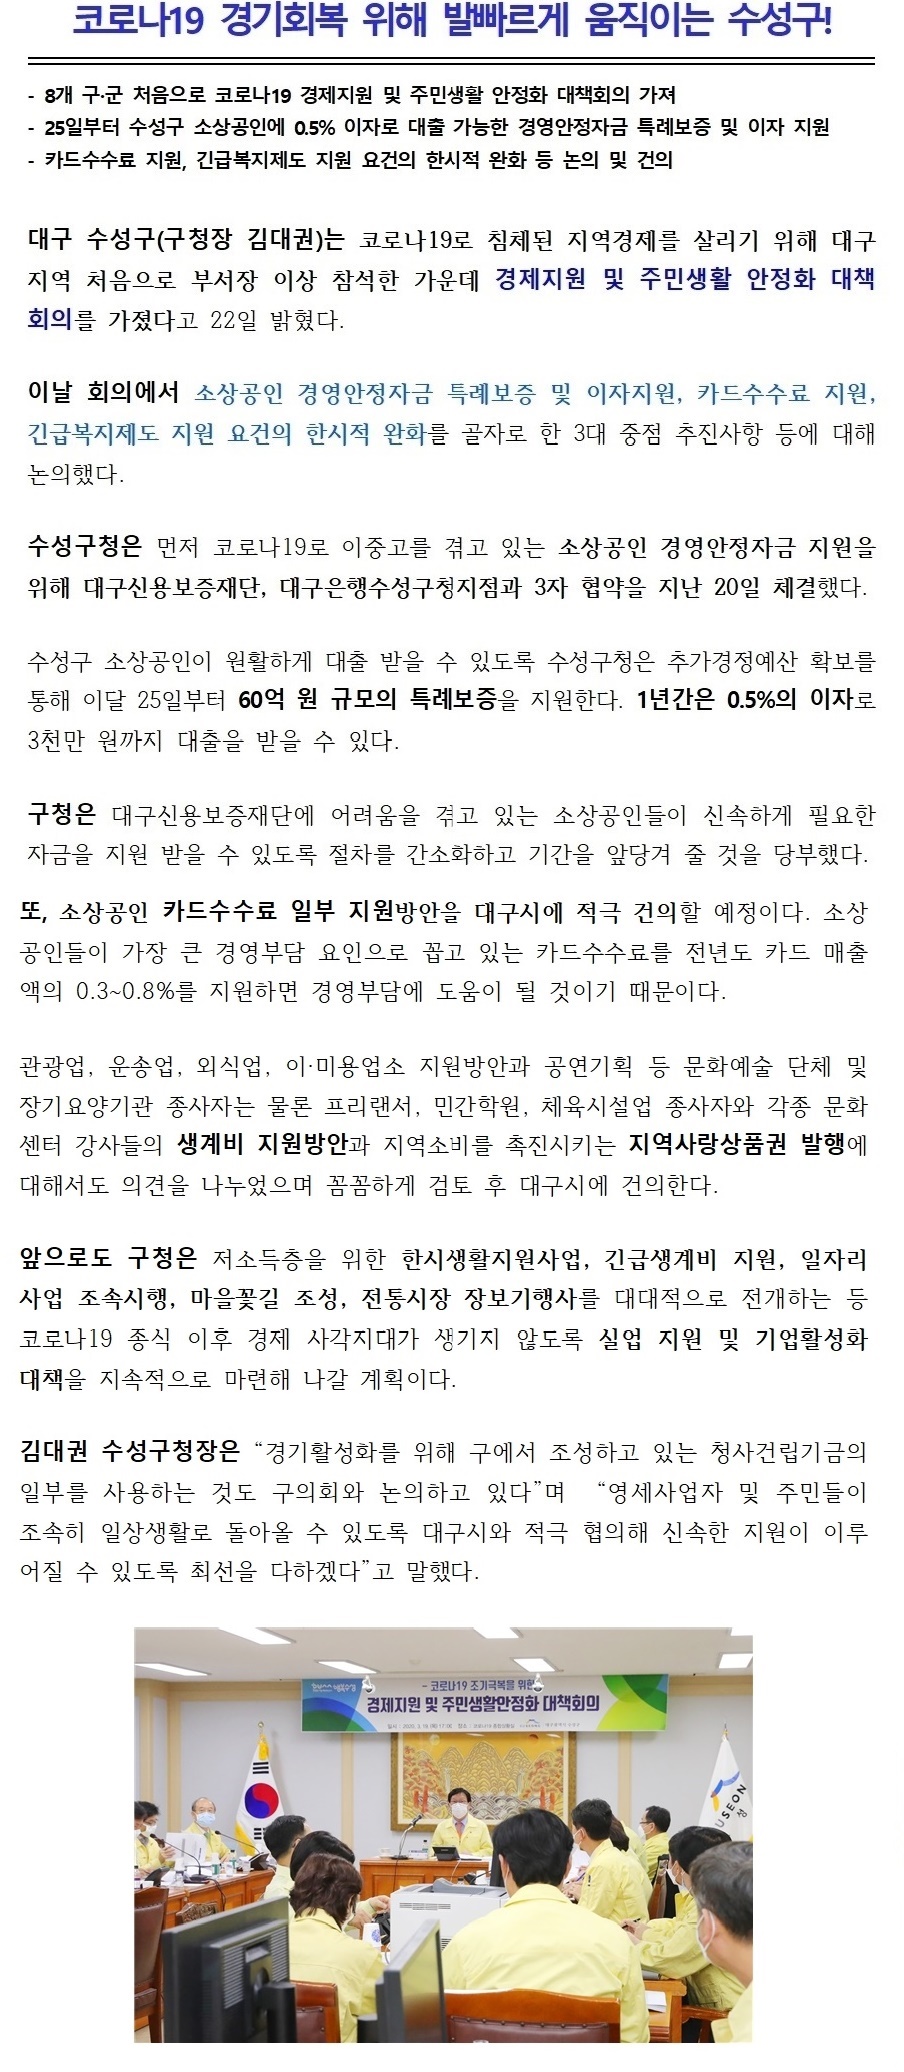 (보도자료)  수성구 경제지원 및 주민생활 안정화 대책회의 개최2